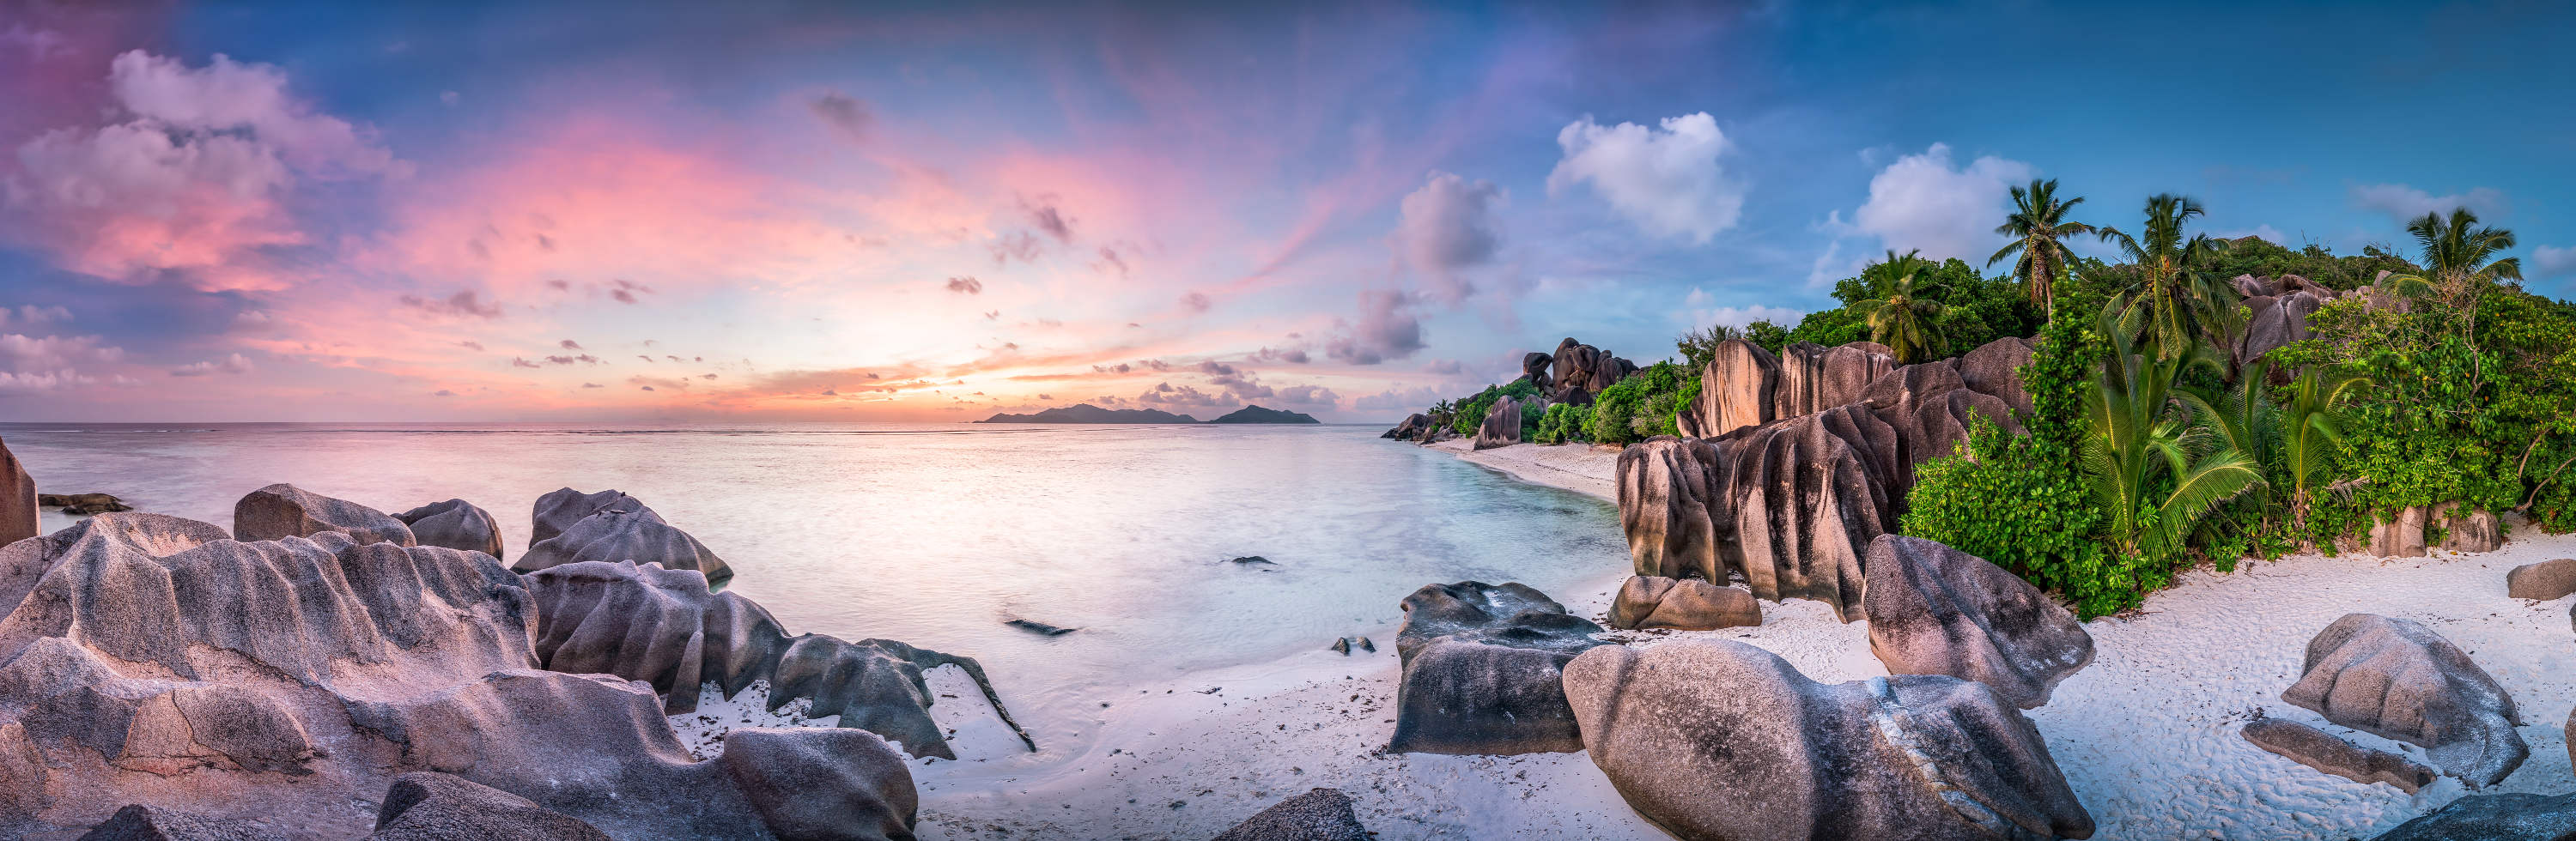 BGYB Destination : Suggestion d'itinéraire pour une croisière aux Seychelles